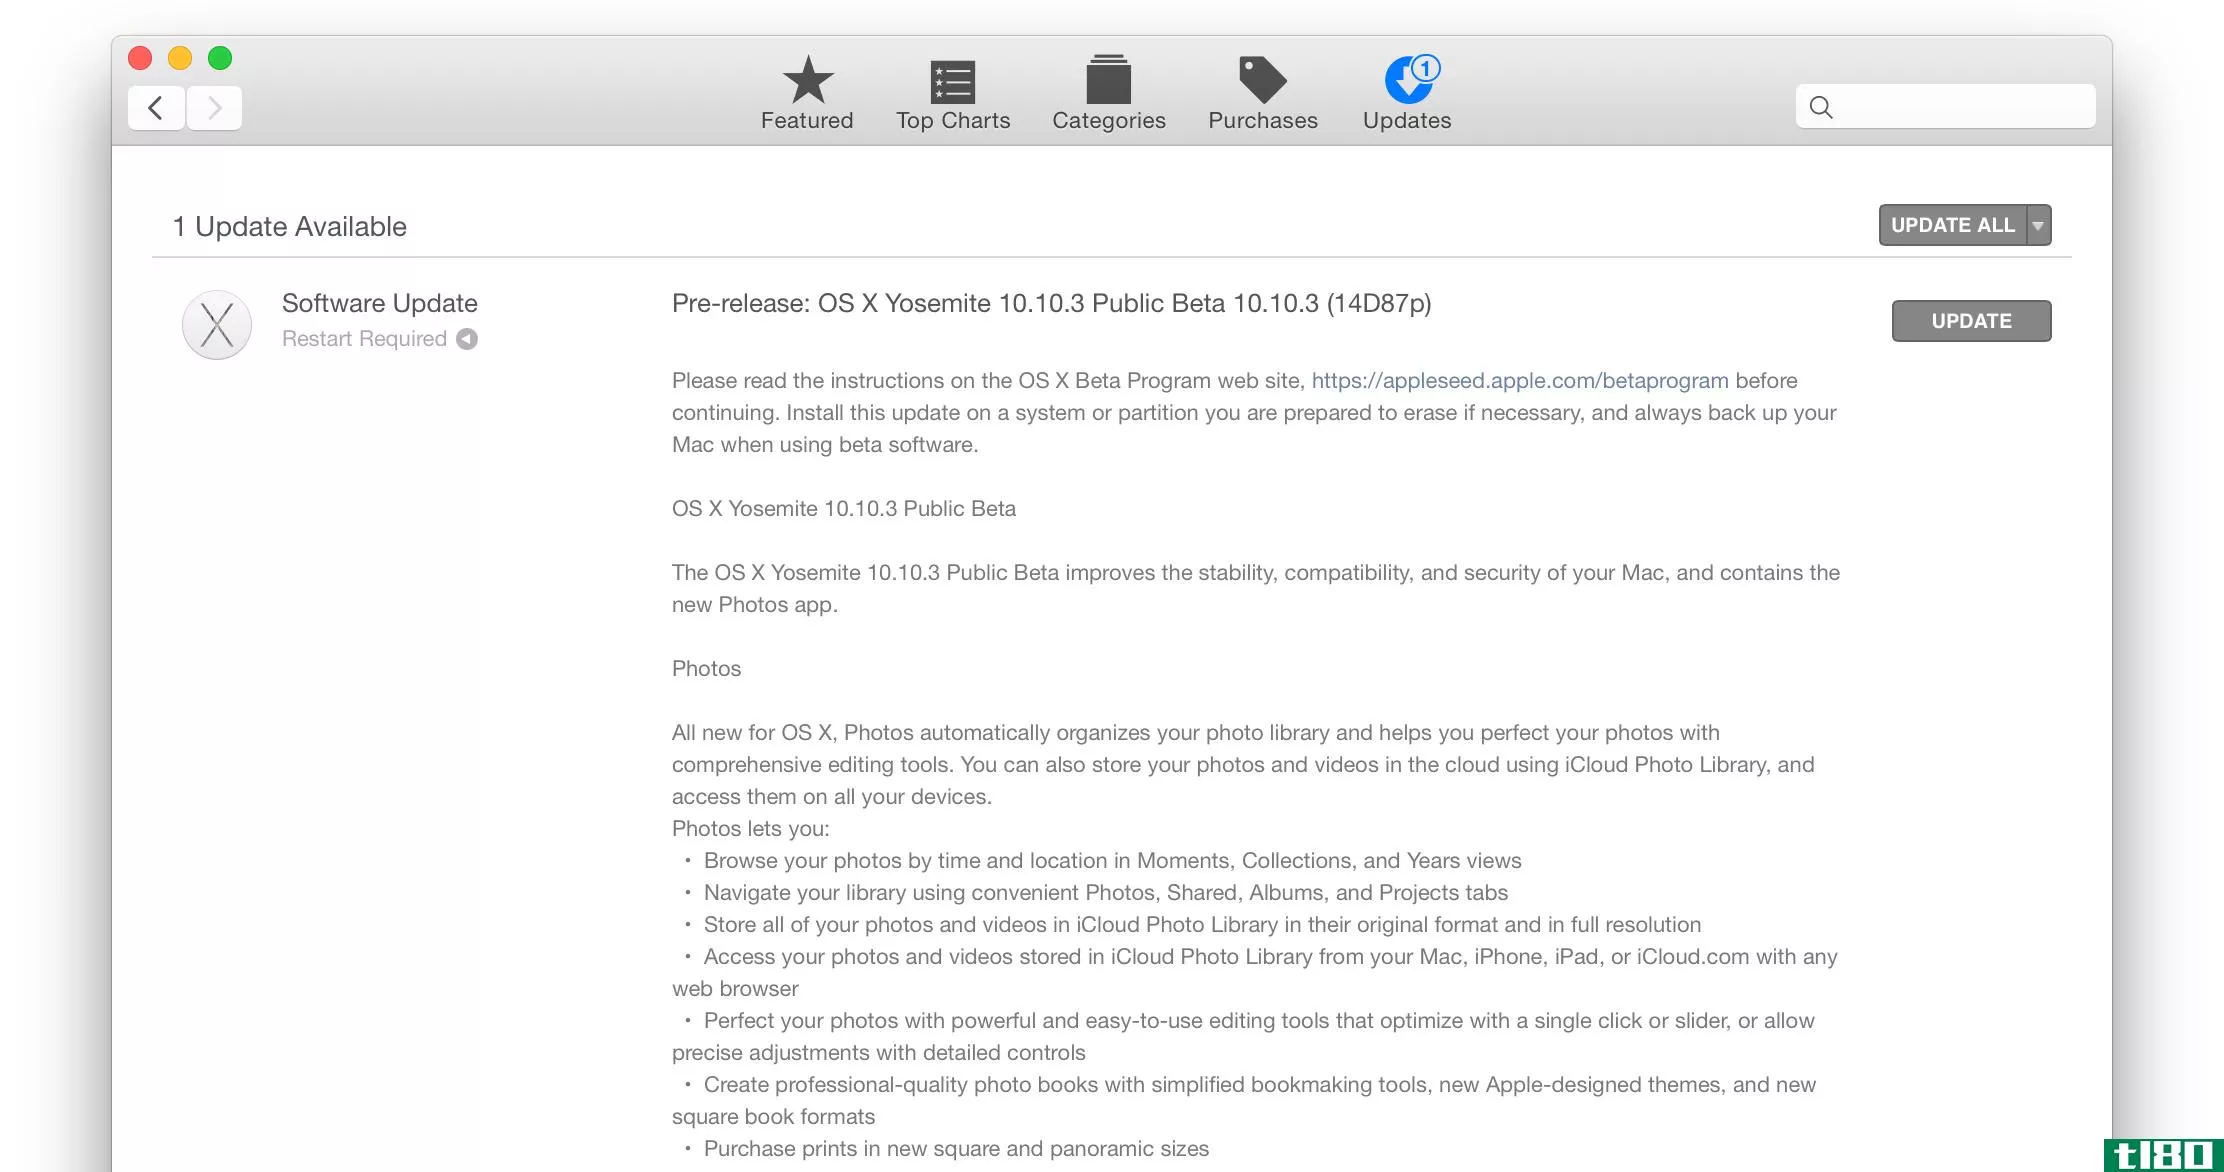 苹果发布了OSX10.10.3公测版和新的照片应用程序